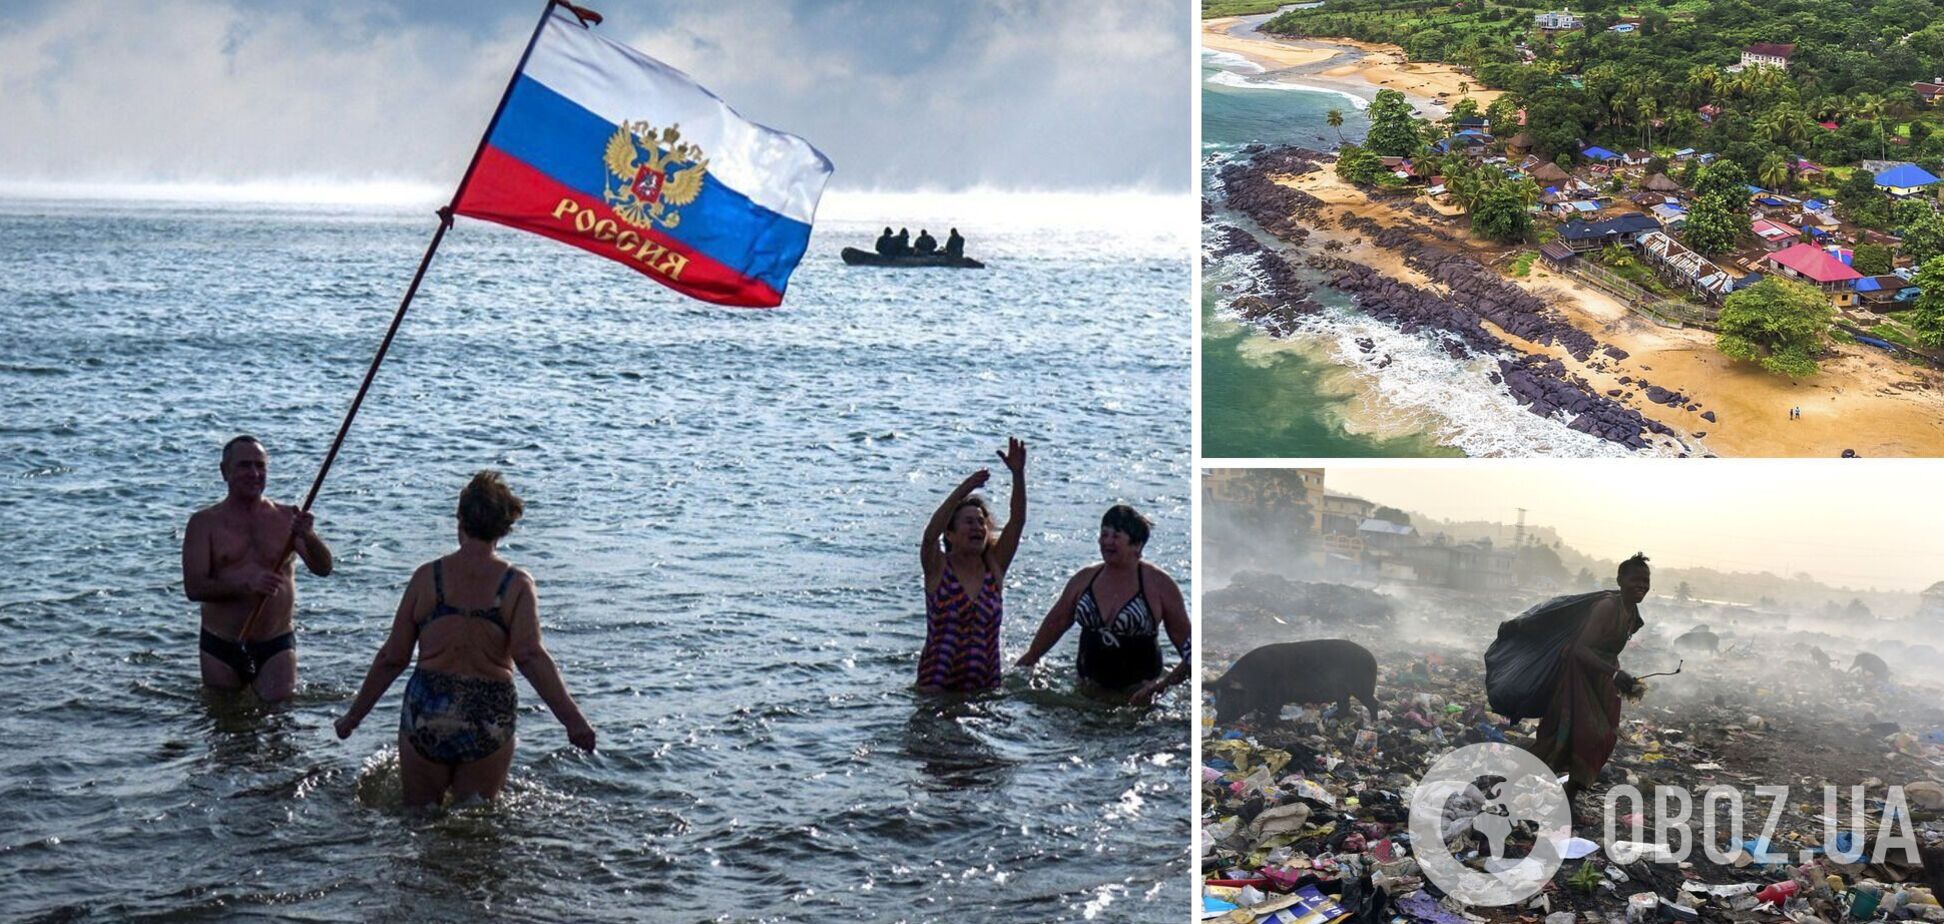 Одна из самых опасных стран мира: Россия нашла альтернативу пляжам 'загнивающей Европы' и уже агитирует людей